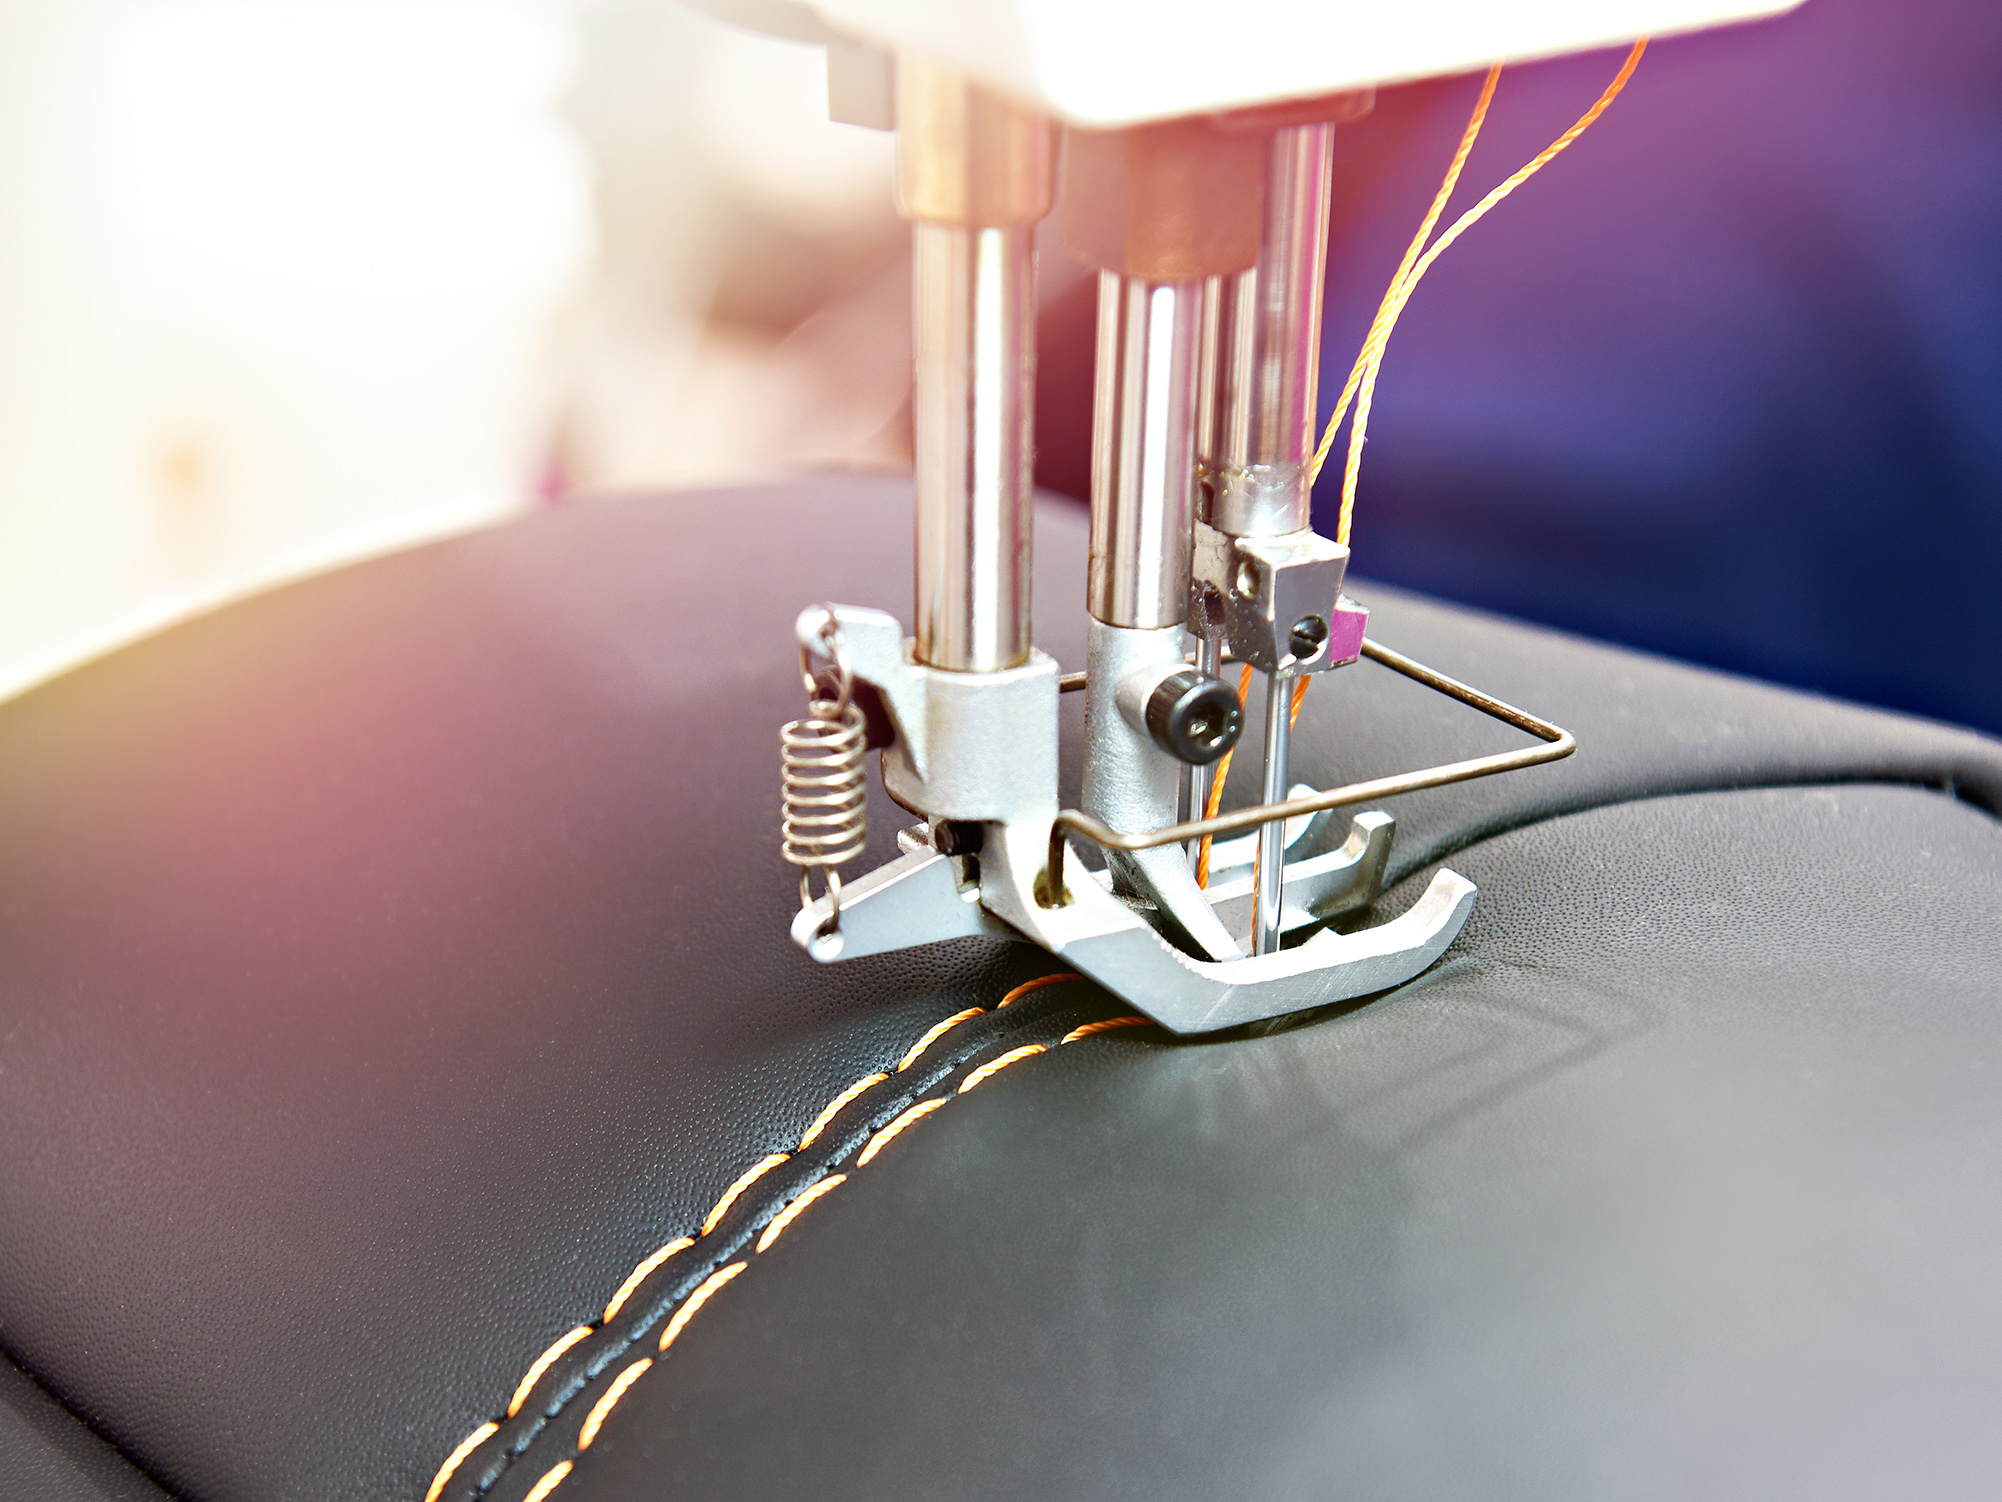 Itens de couro elevam importação  de máquinas de costura em 85%